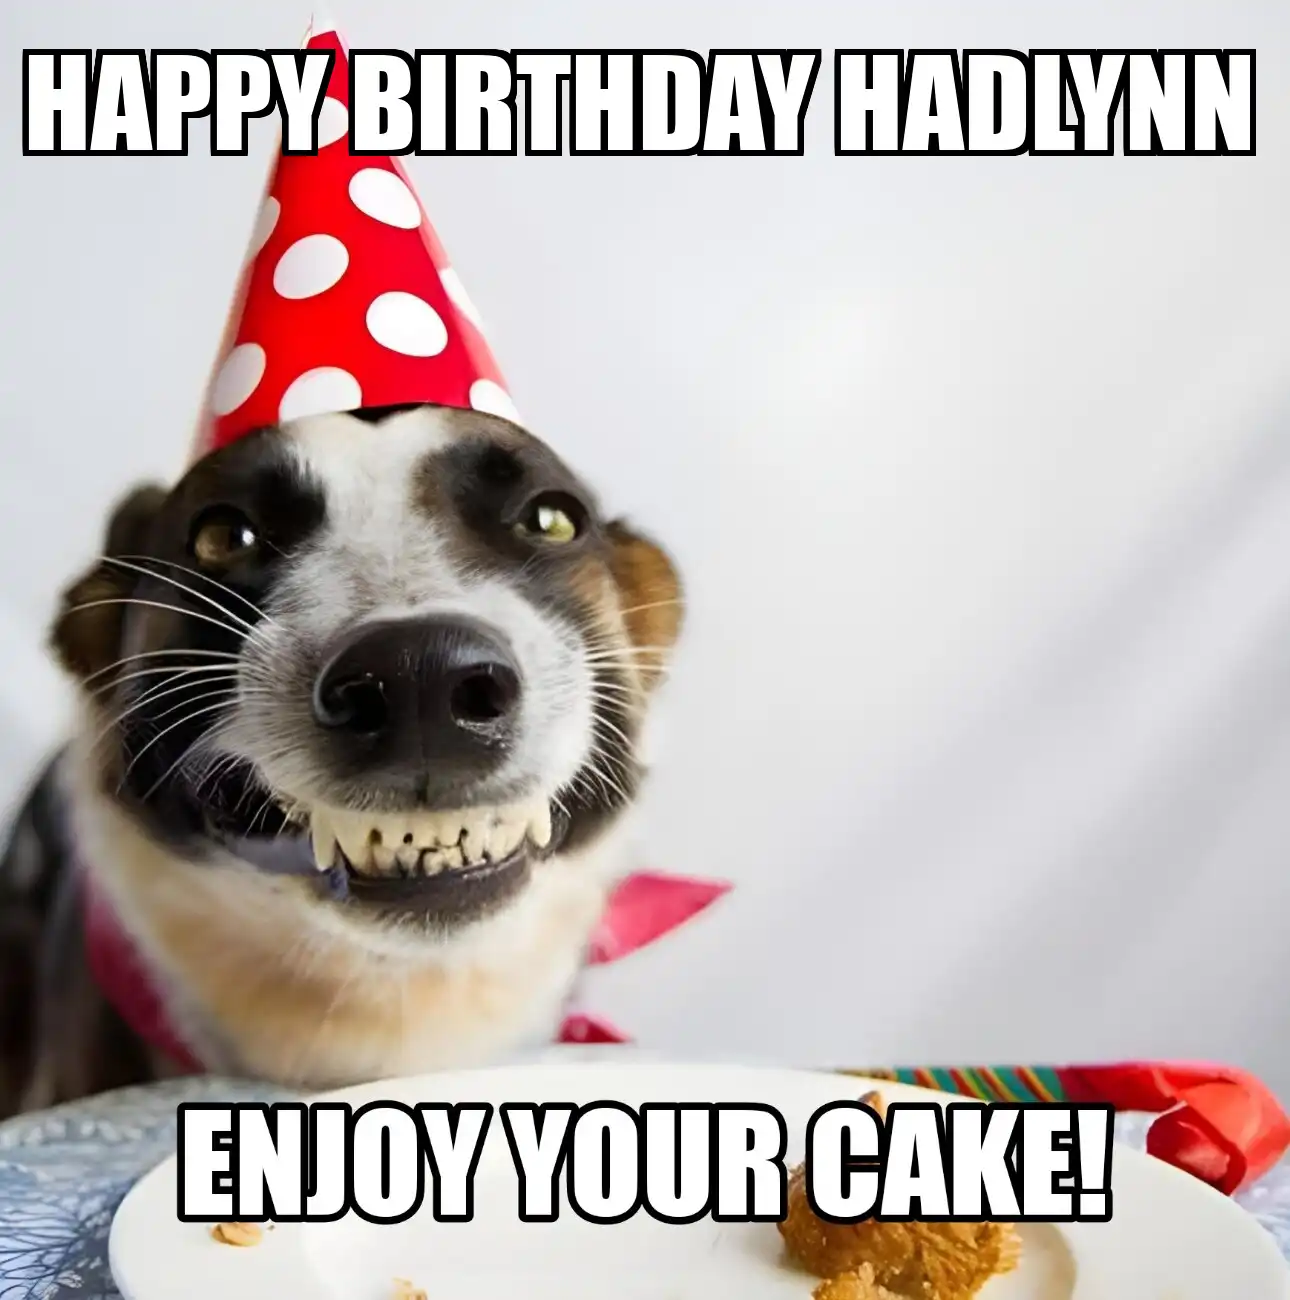 Happy Birthday Hadlynn Enjoy Your Cake Dog Meme